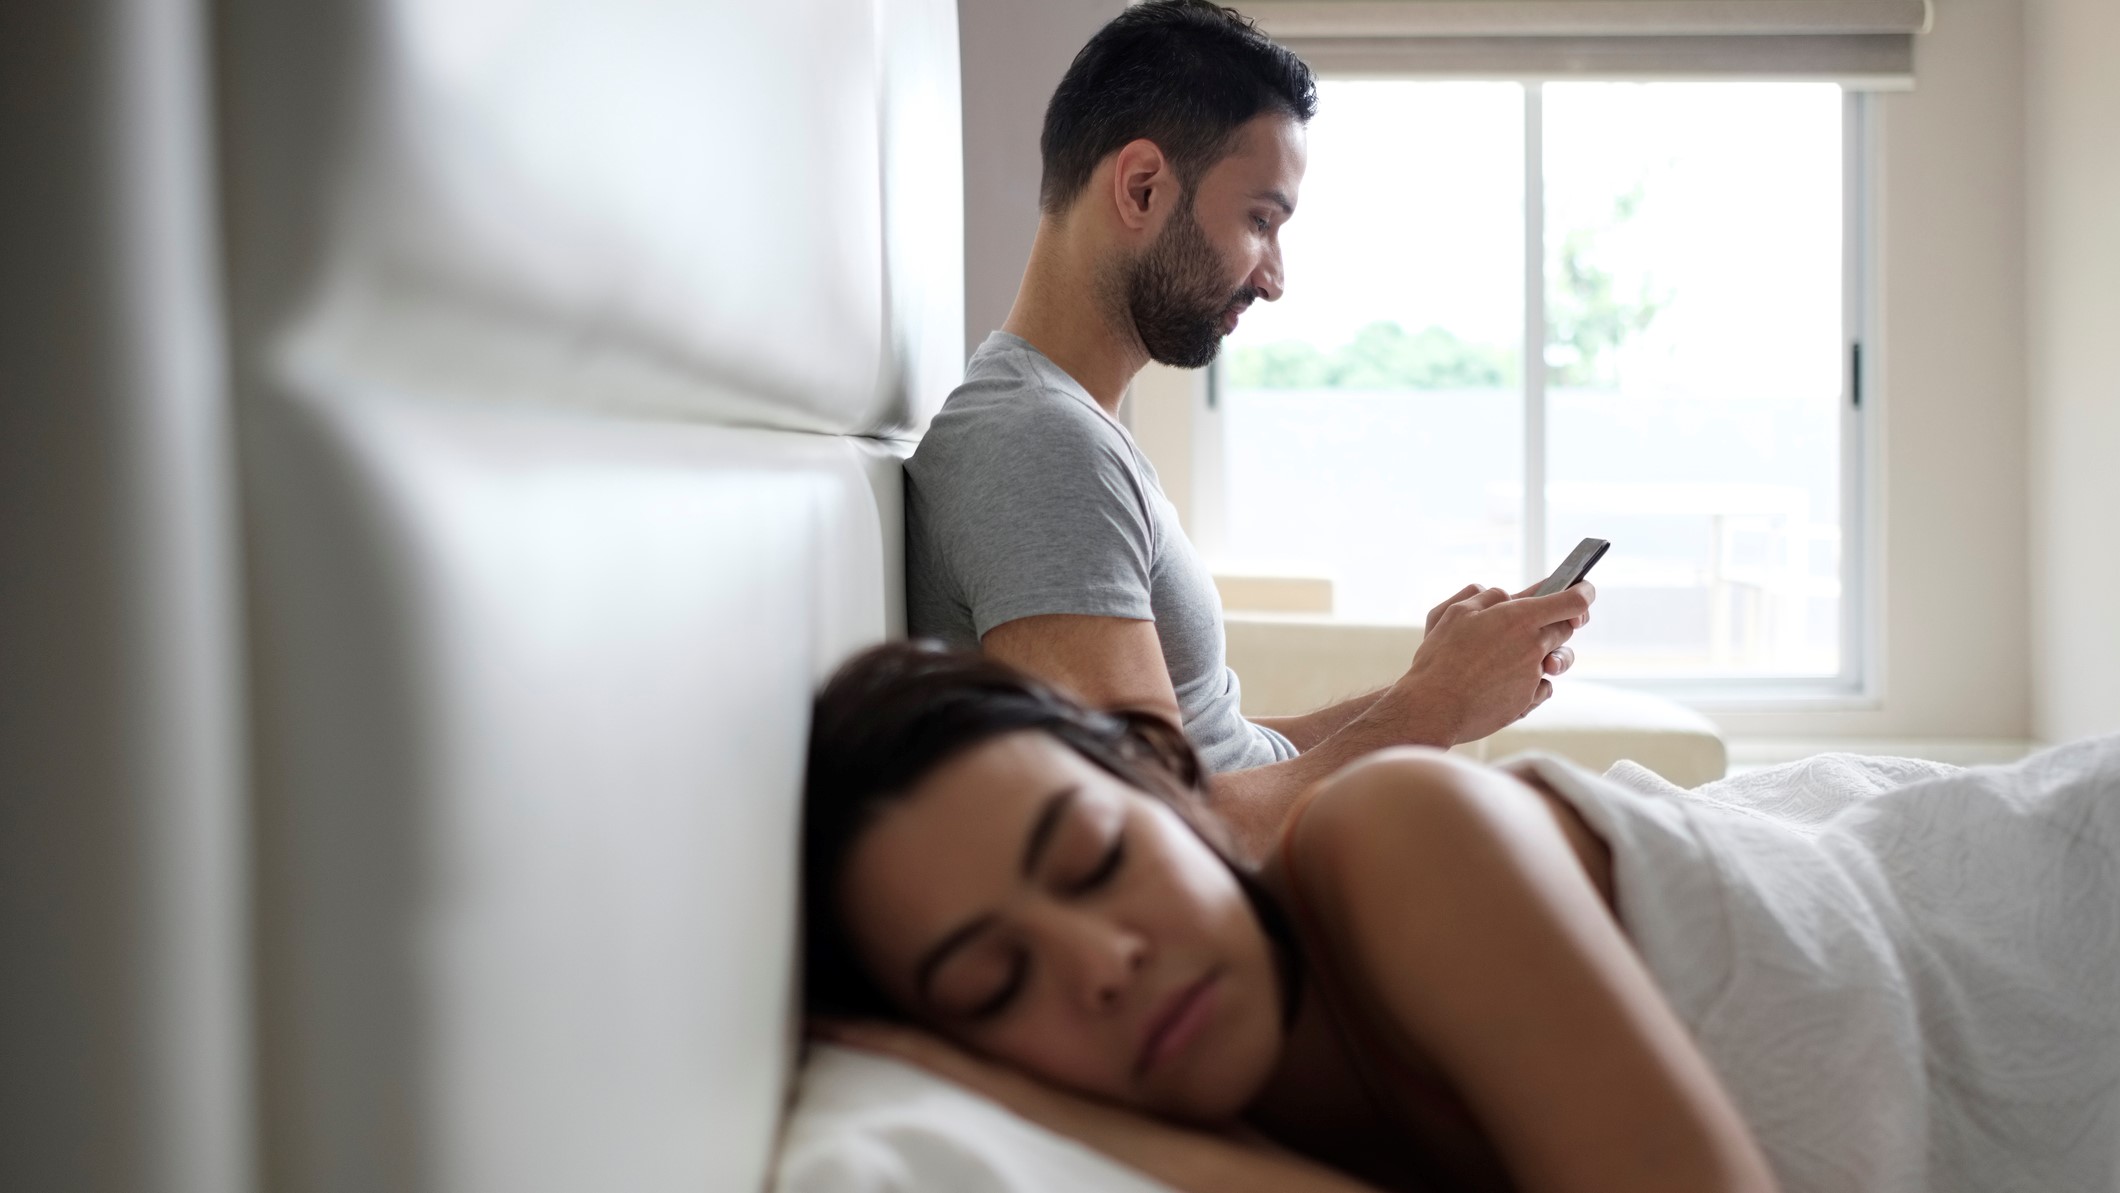 Un chico consulta algo en su móvil, mientras su chica duerme al otro lado de la cama.